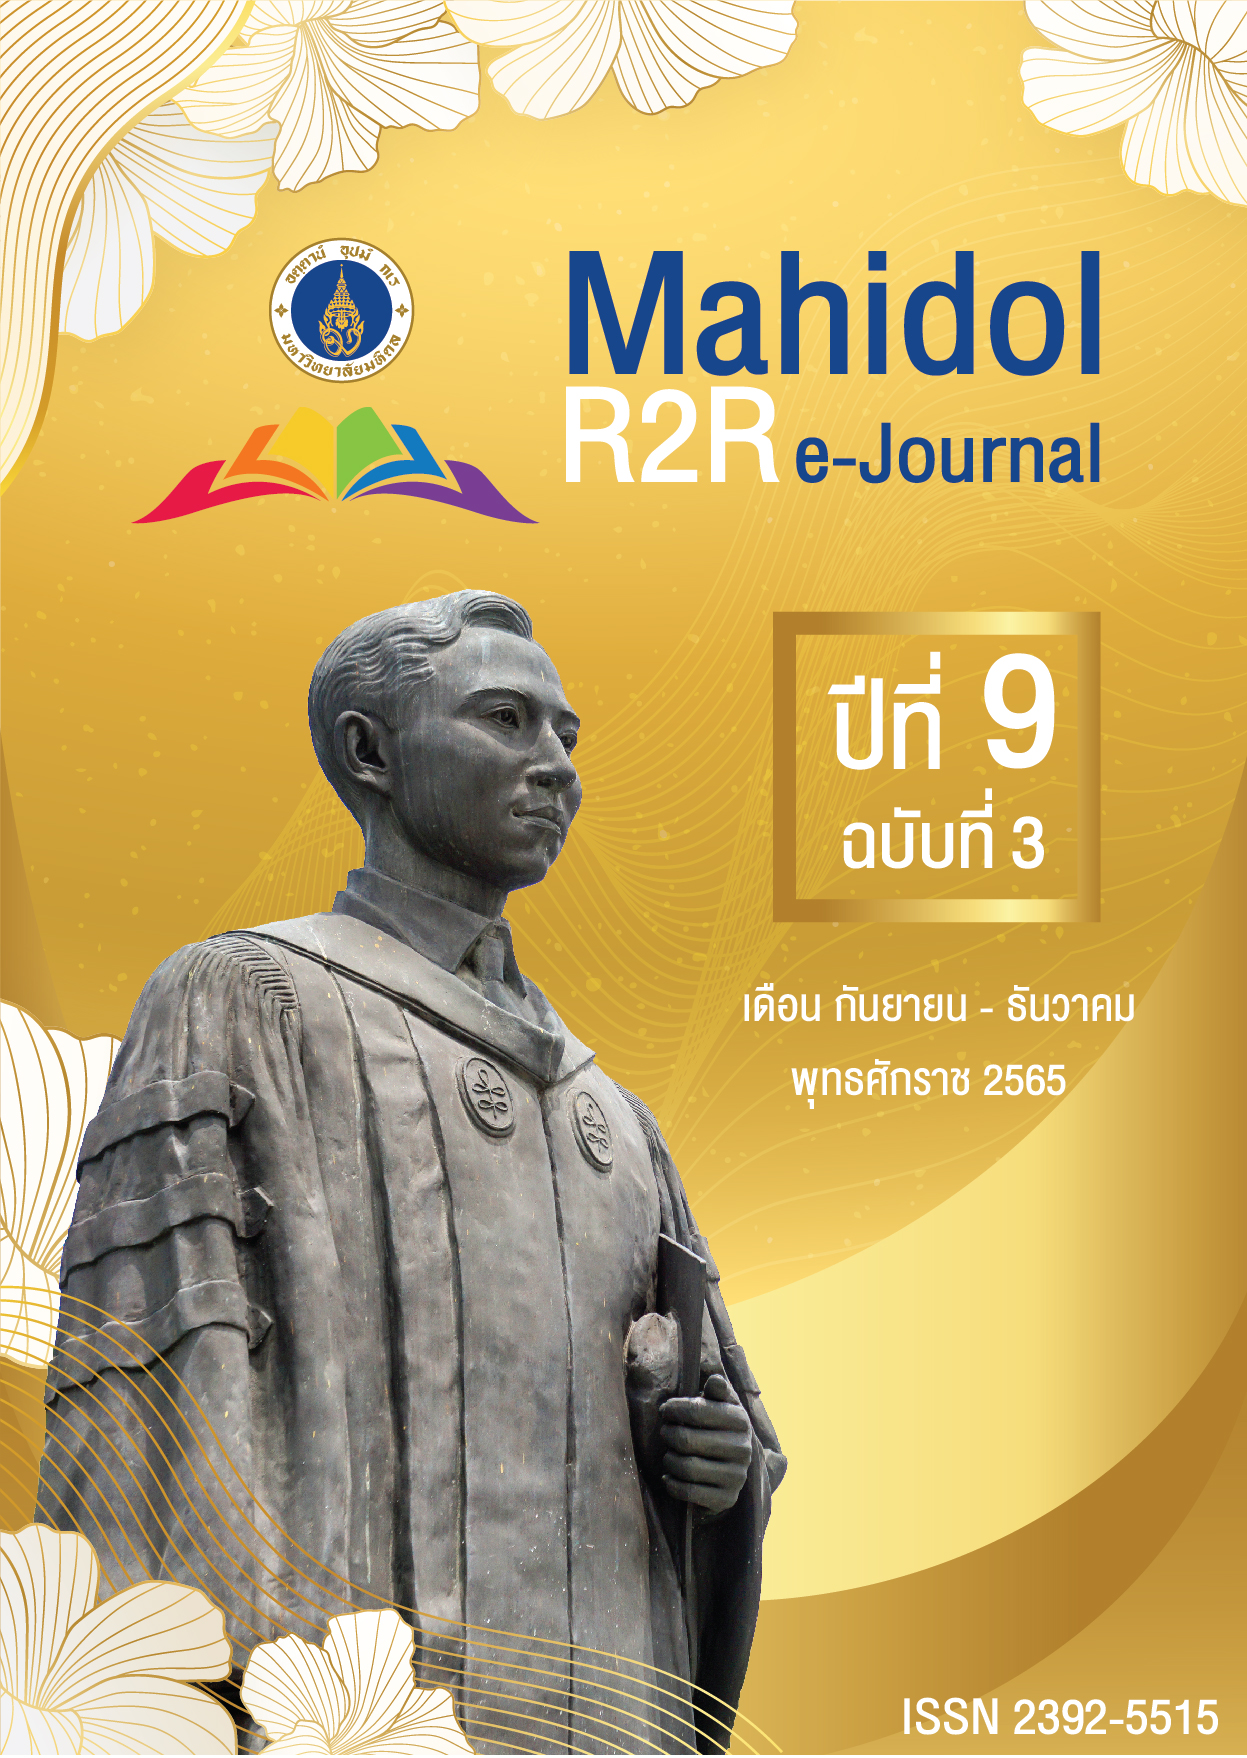 					ดู ปีที่ 9 ฉบับที่ 3 (2565): Mahidol R2R e-Journal
				